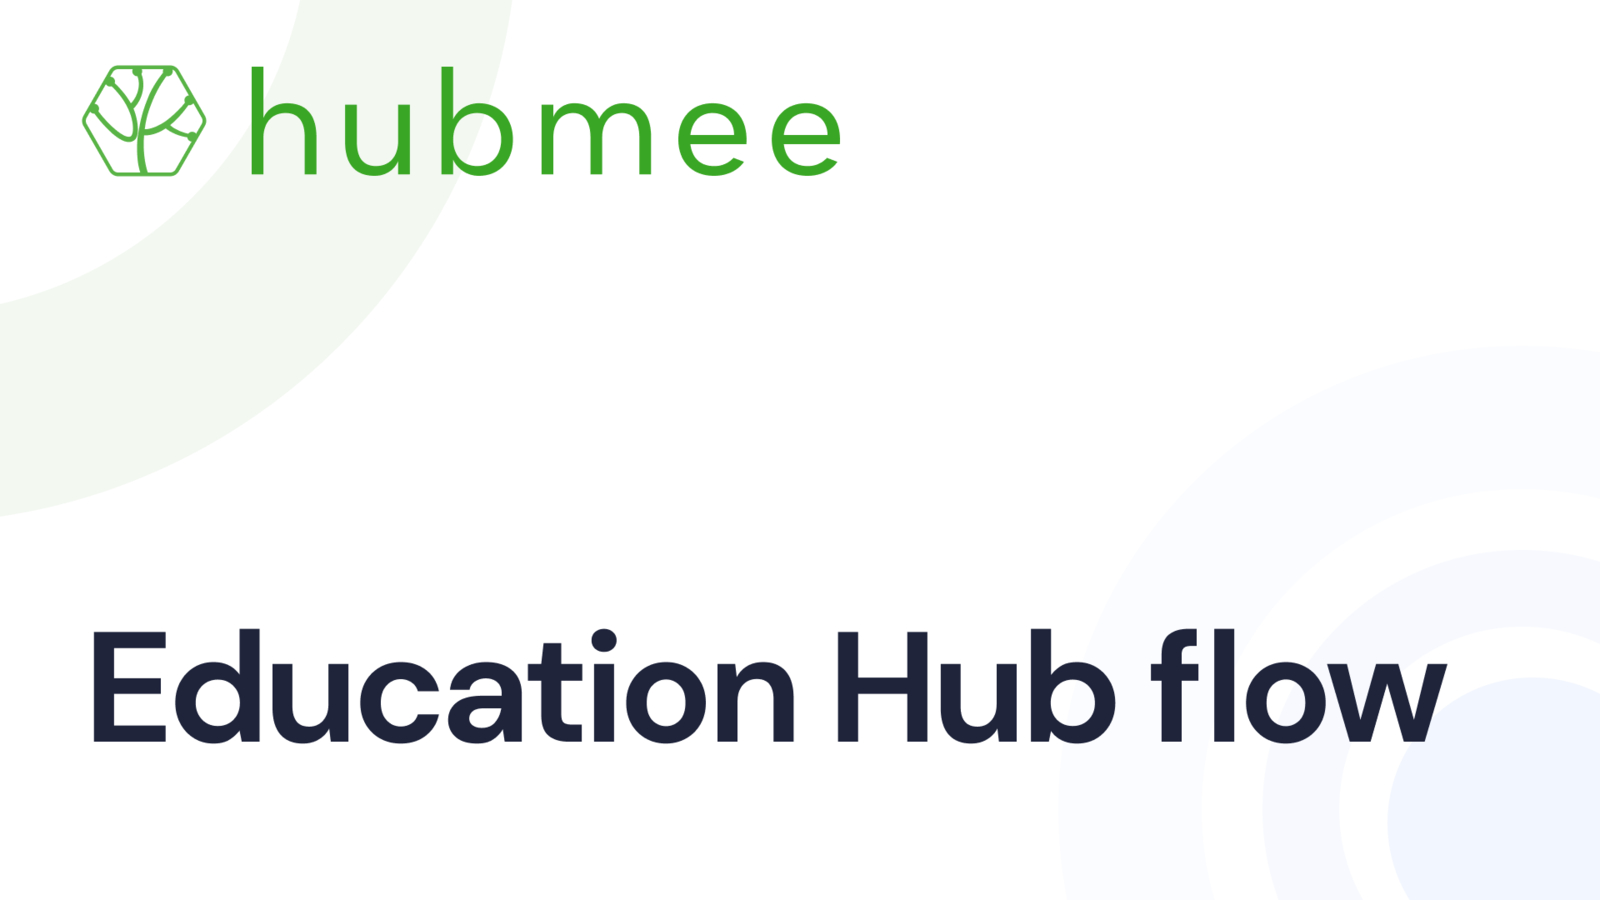 Education Hub flow